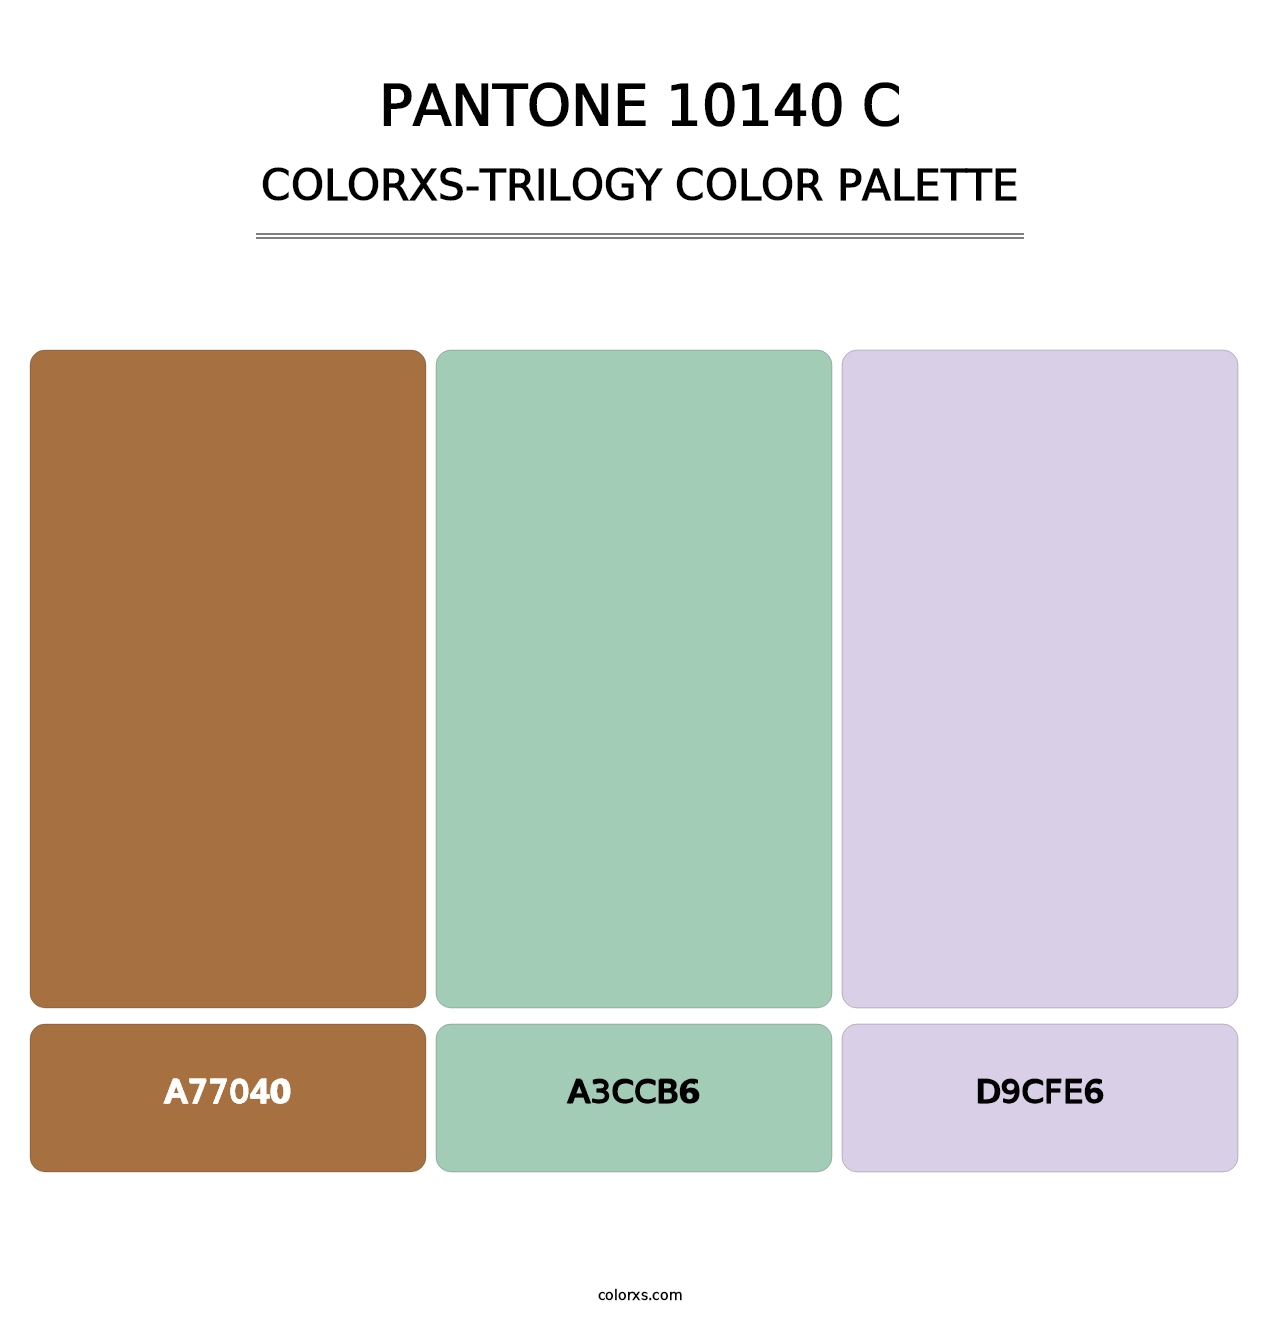 PANTONE 10140 C - Colorxs Trilogy Palette